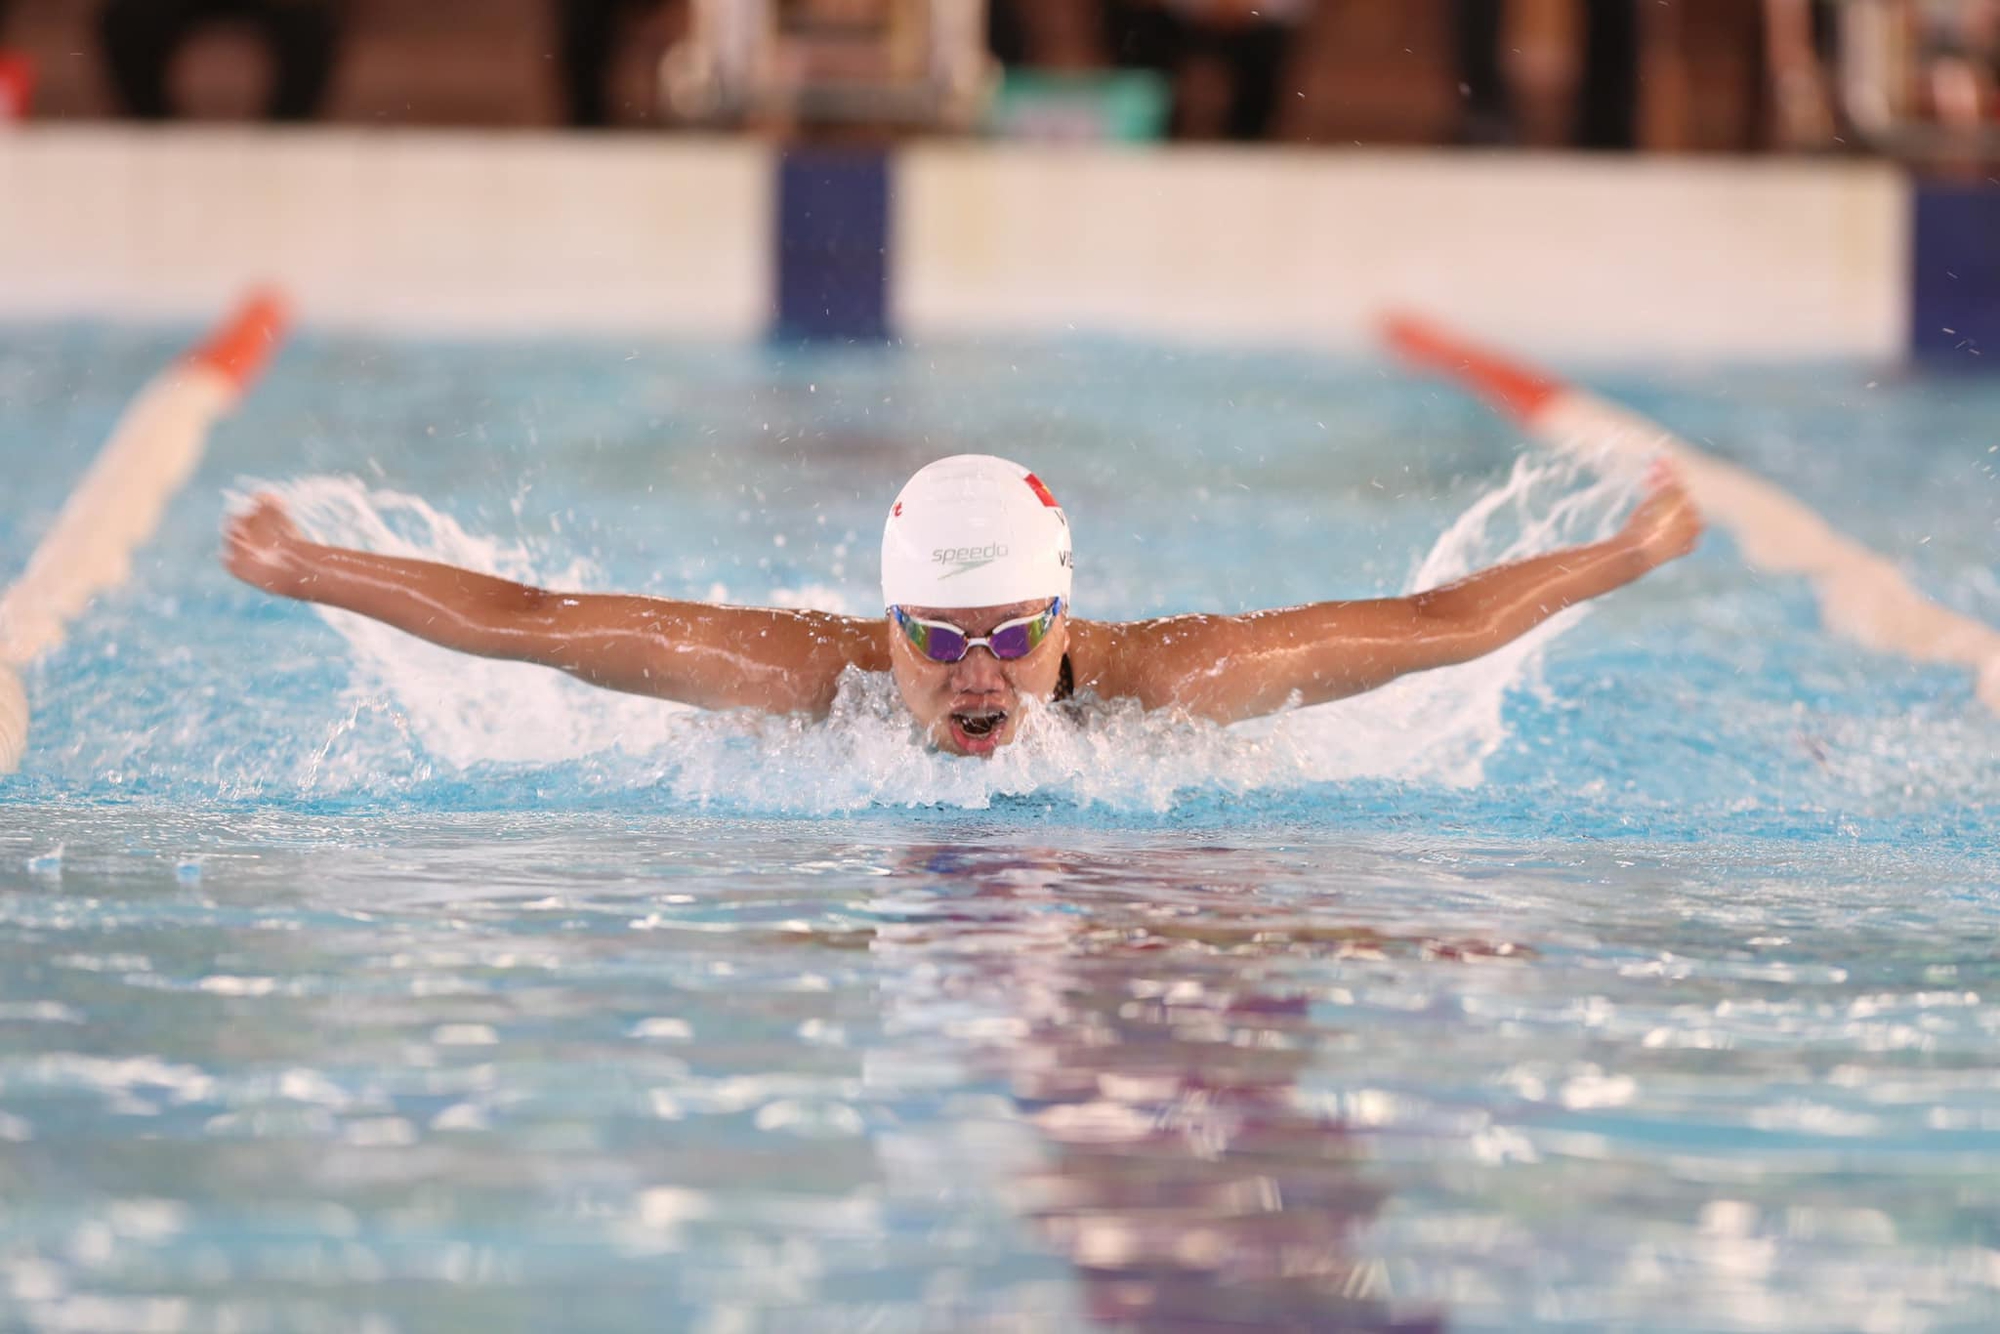 Ánh Viên sau gần 2 năm rời đường đua xanh, trở thành người truyền cảm hứng bơi lội hot nhất TikTok - Ảnh 2.